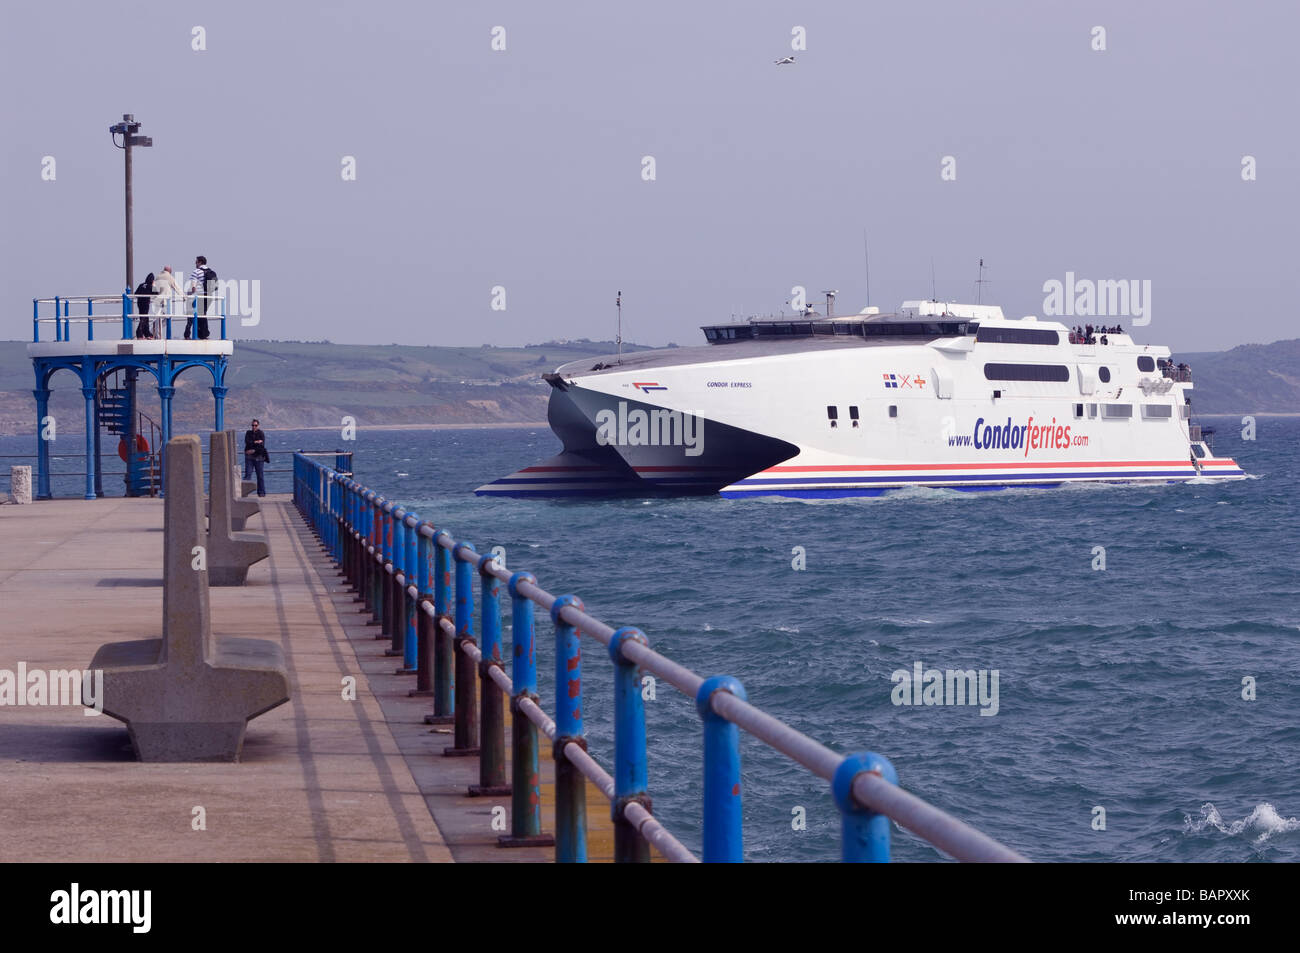 Condor Express seacat se prépare à tour de bras la tête dans le Dorset Weymouth Harbour avant l'amarrage dans le port Banque D'Images